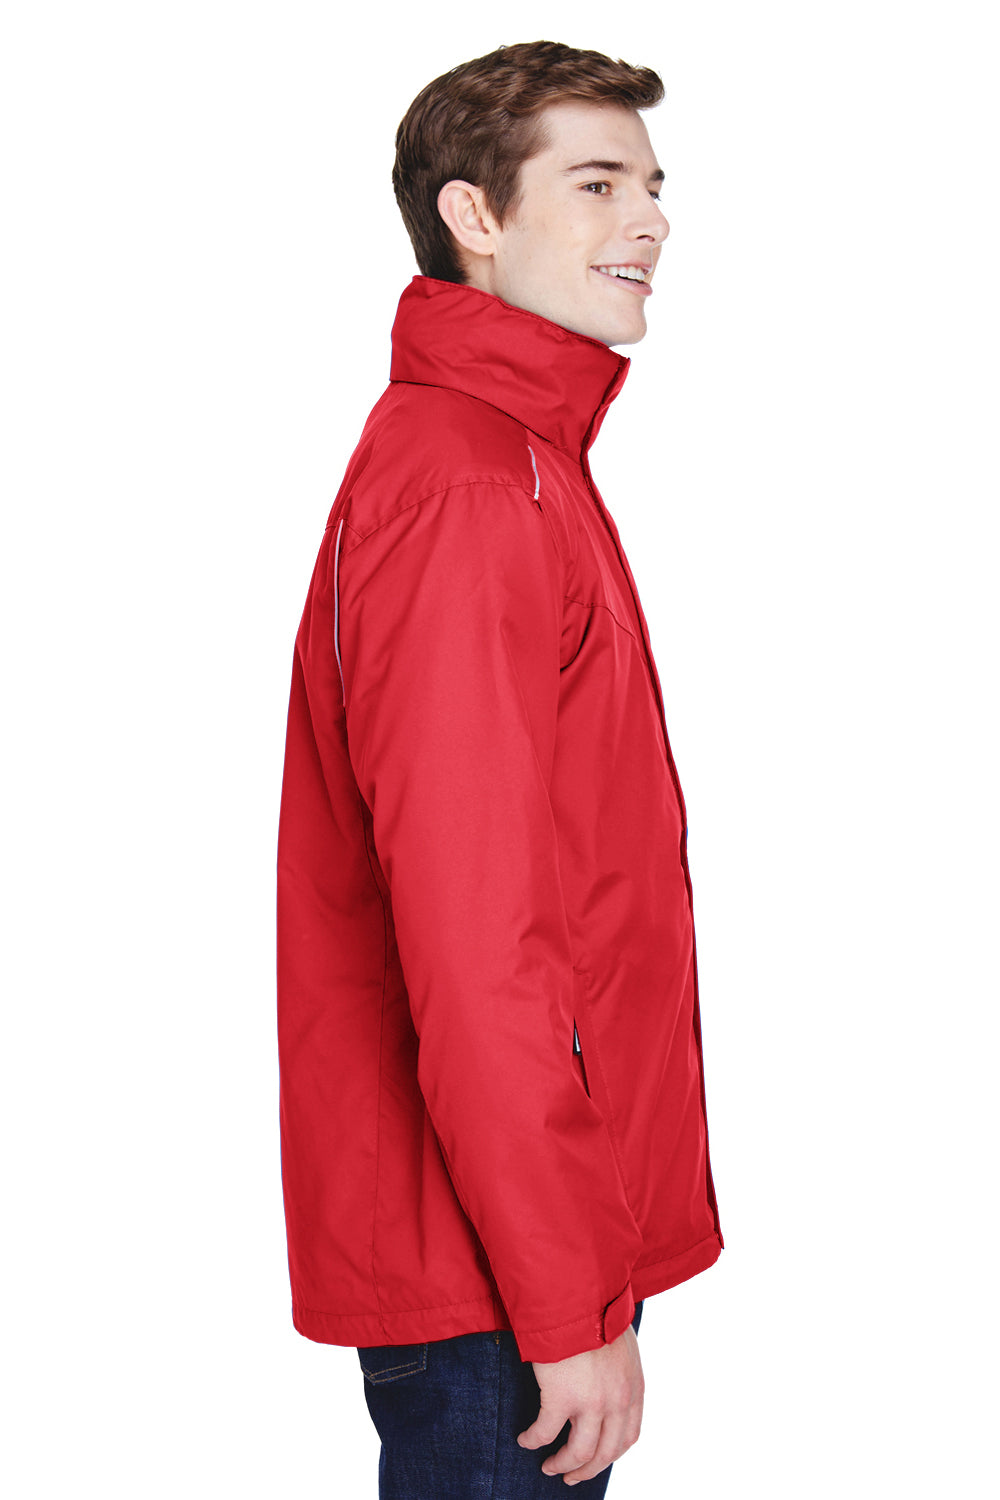 Core 365 88205 Mens Region 3-in-1 Water Resistant Full Zip Hooded Jacket Red Side